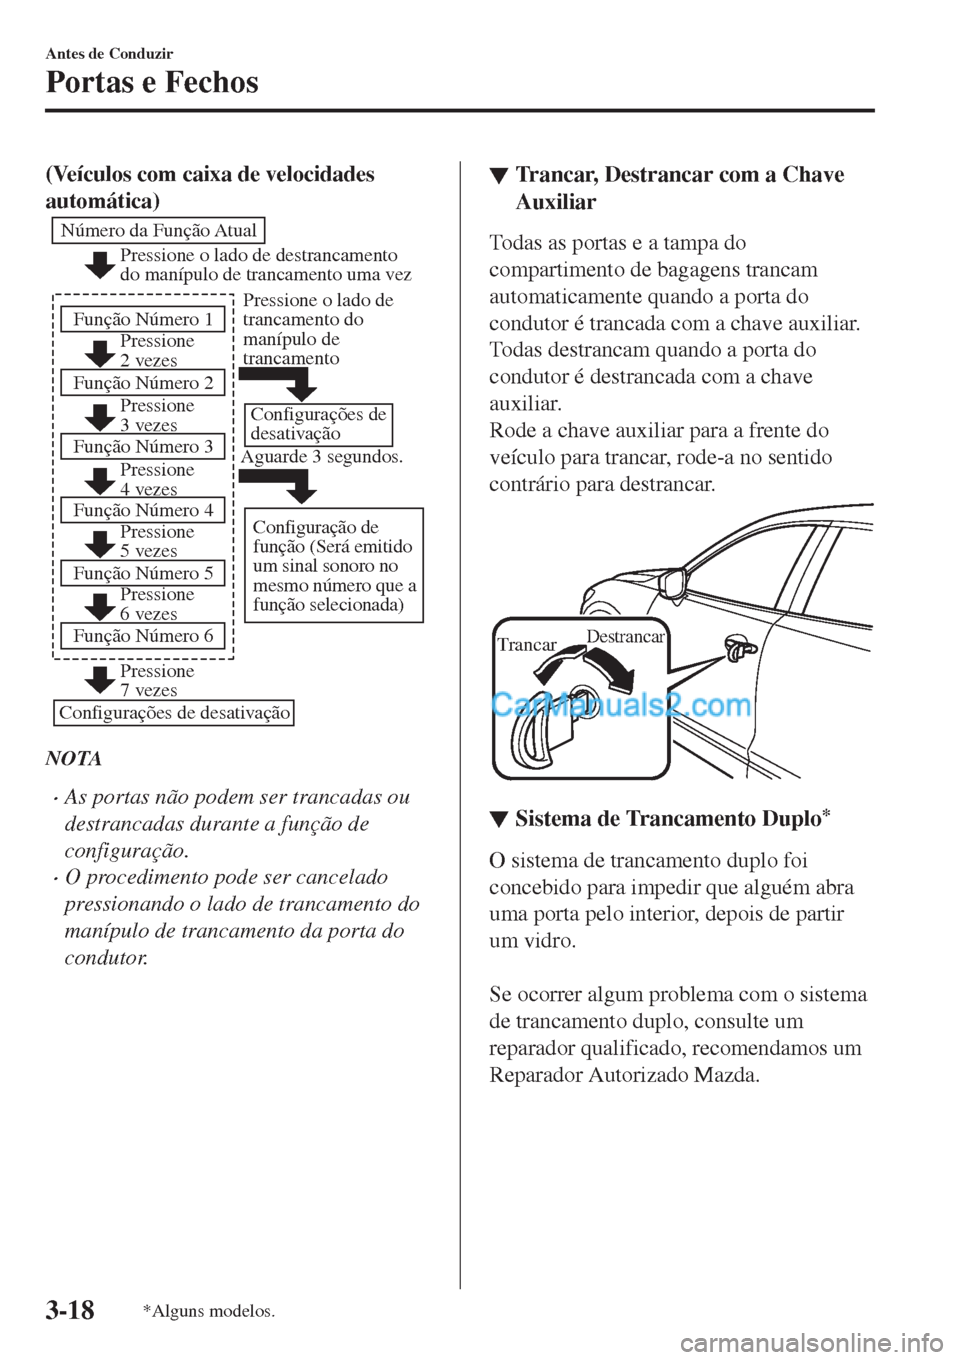 MAZDA MODEL CX-5 2017  Manual do proprietário (in Portuguese) (Veículos com caixa de velocidades
automática)
Pressione o lado de destrancamento 
do manípulo de trancamento uma vez
Pressione 
2 vezes
Pressione 
3 vezes Número da Função Atual
Função Númer